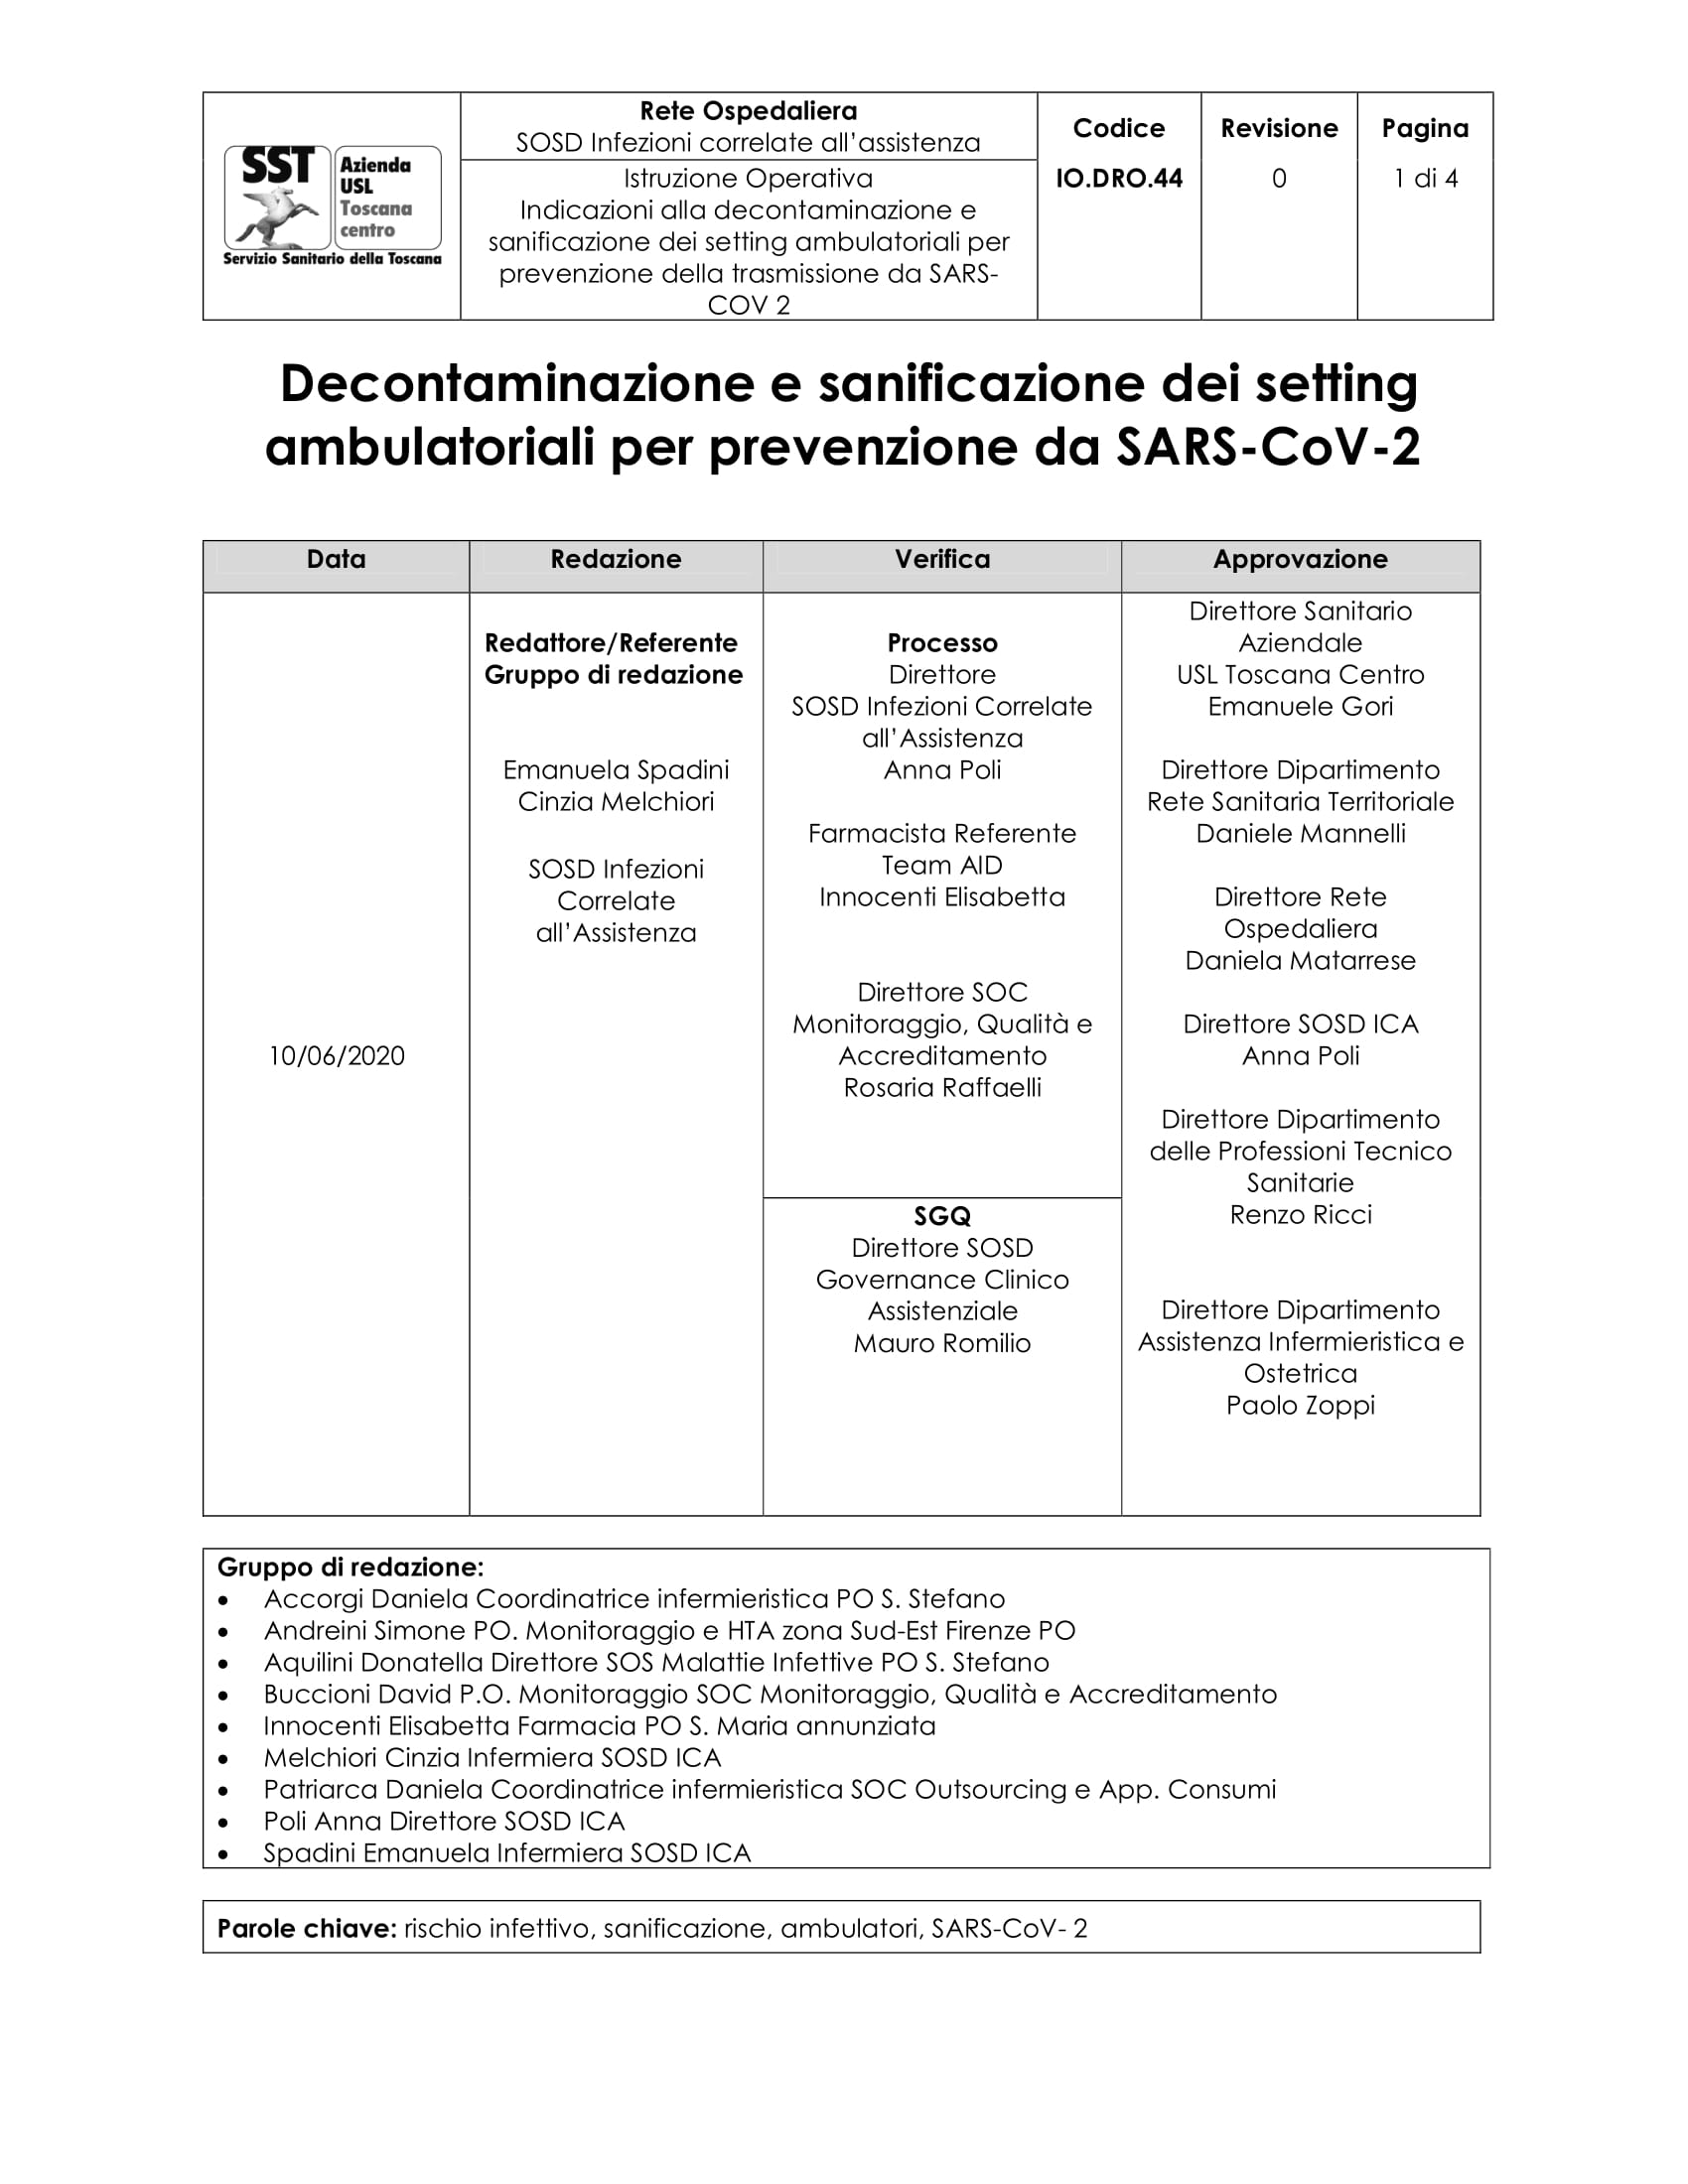 IO.DRO.44 Decontaminazione e sanificazione dei setting ambulatoriali per prevenzione da SARS-CoV-2